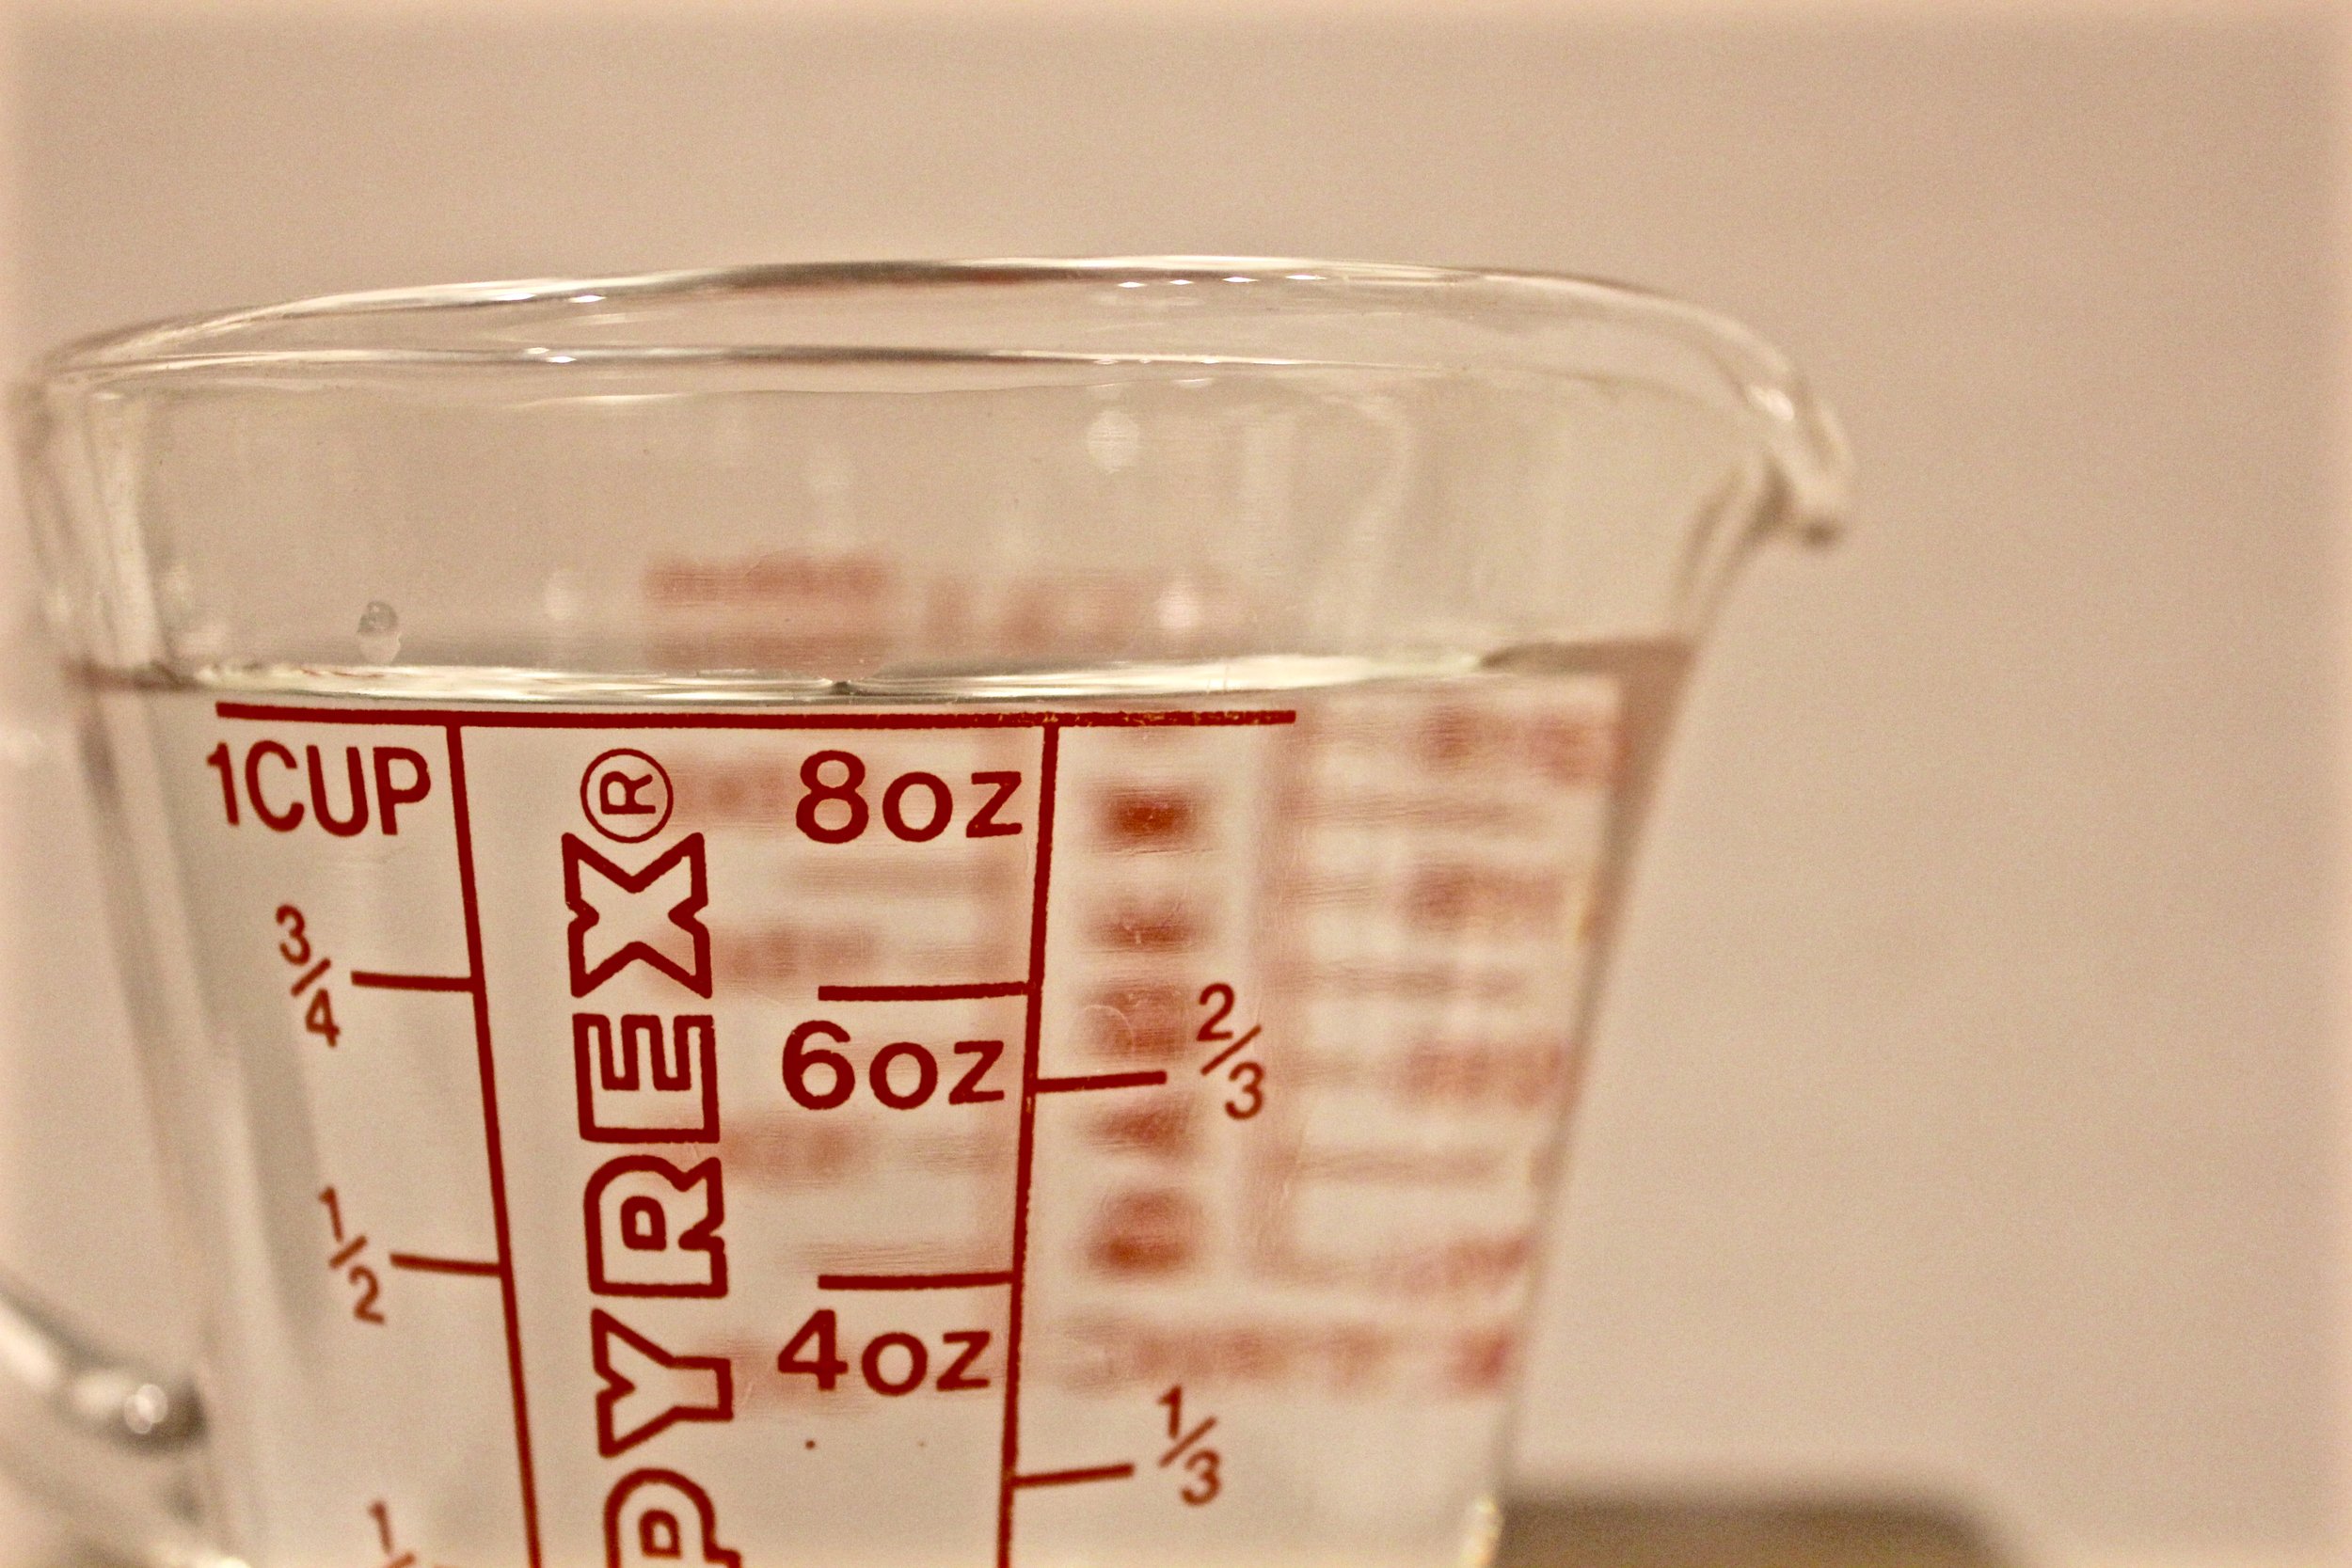 Plastic Liquid Measure Jug, Container Liquids Scale